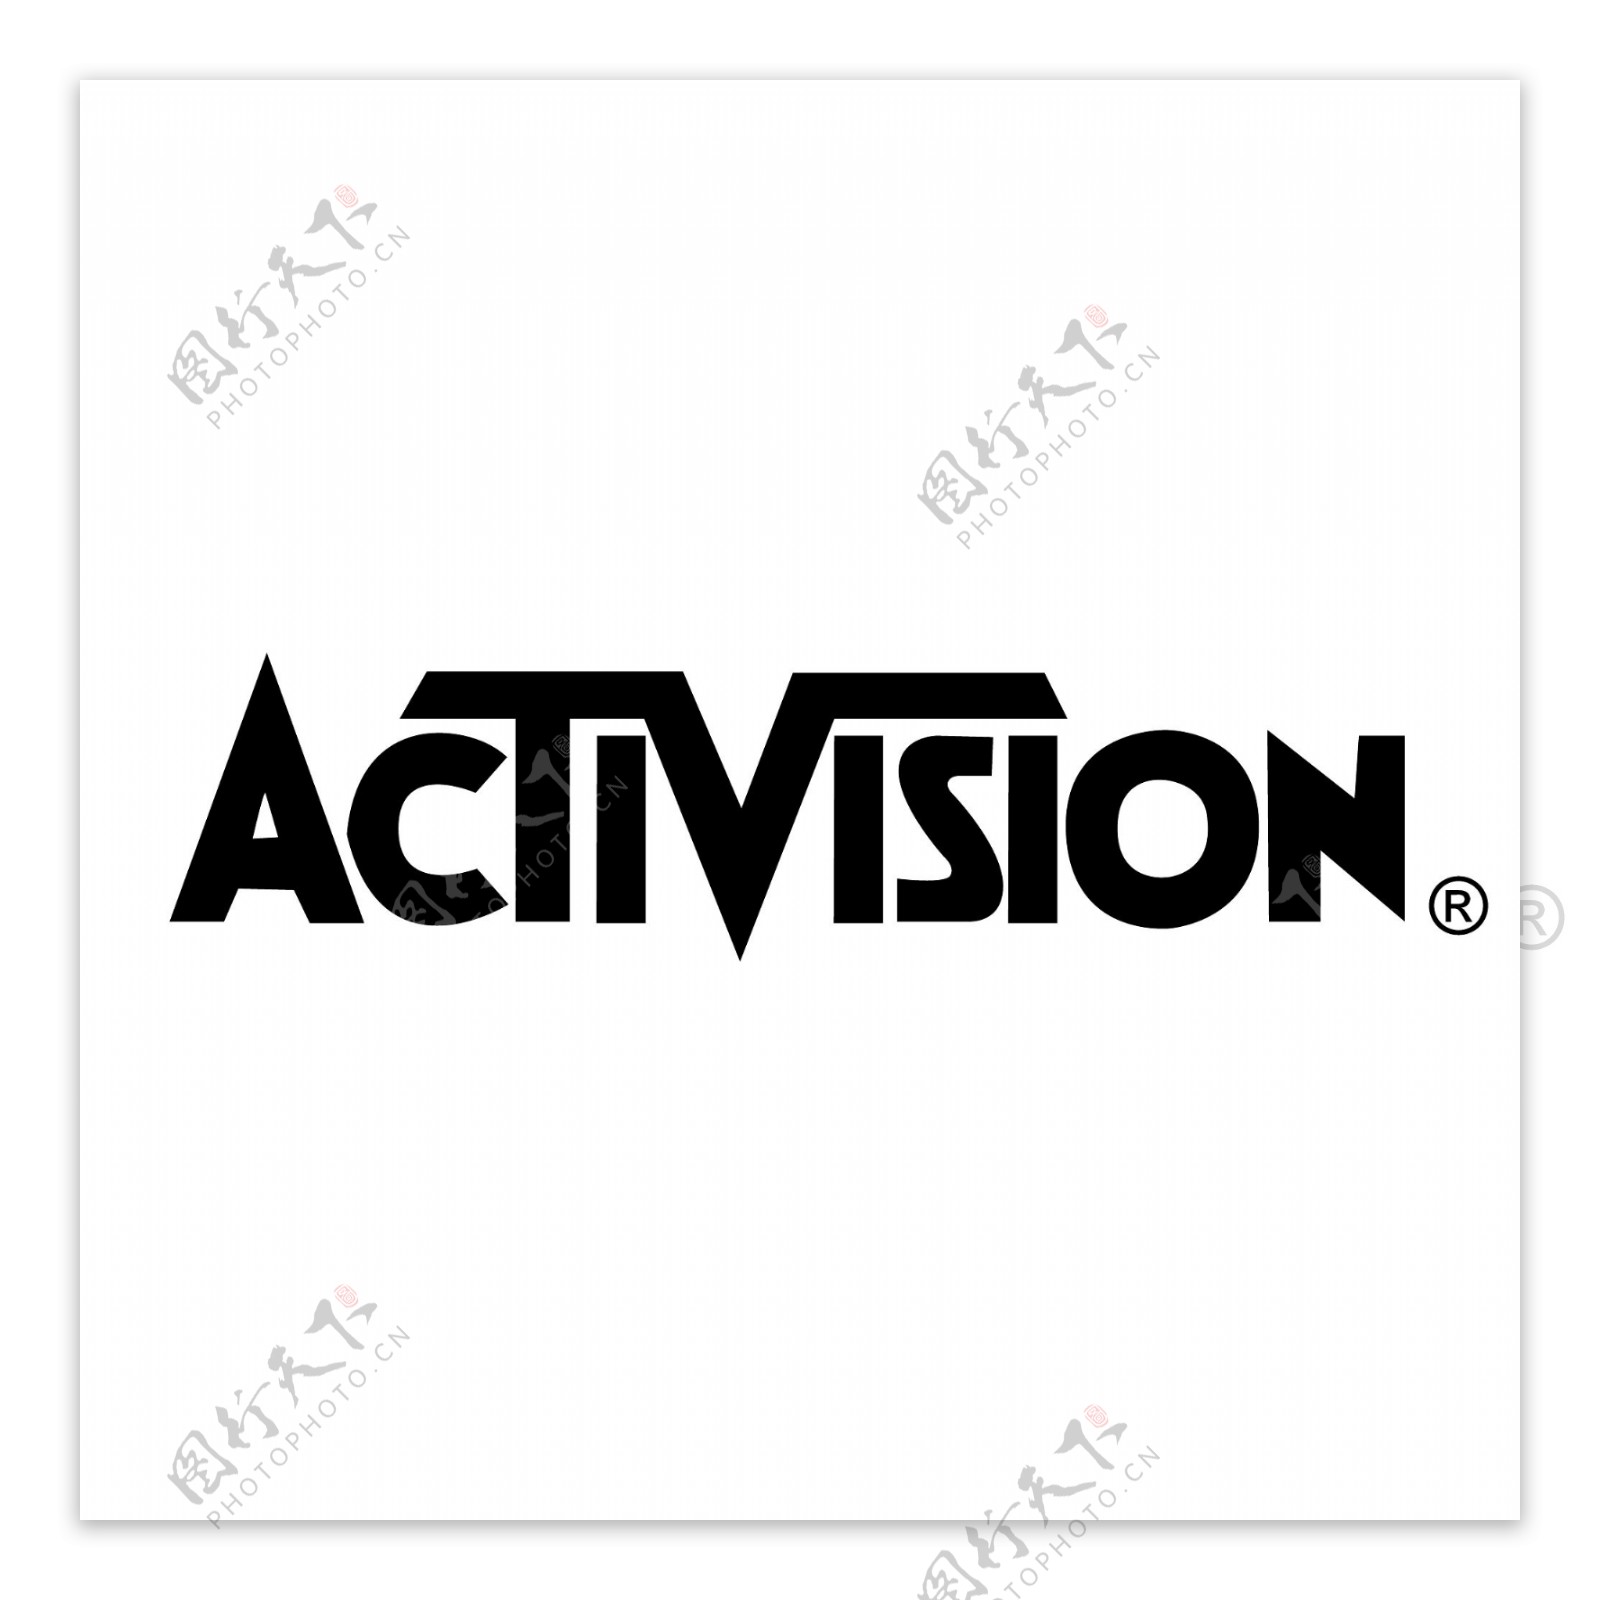 Activision公司